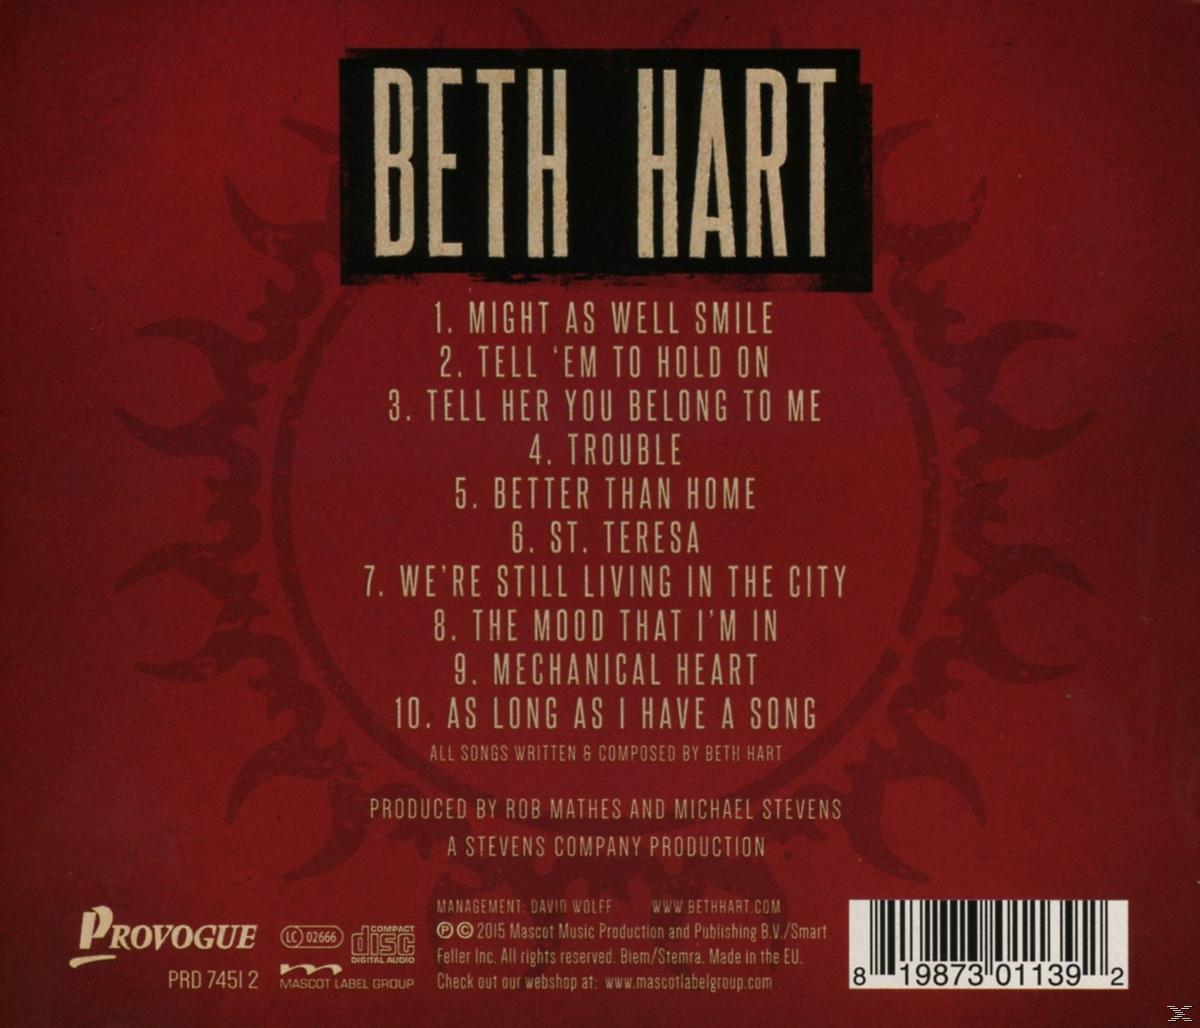 Beth Hart - Better - (CD) Home Than